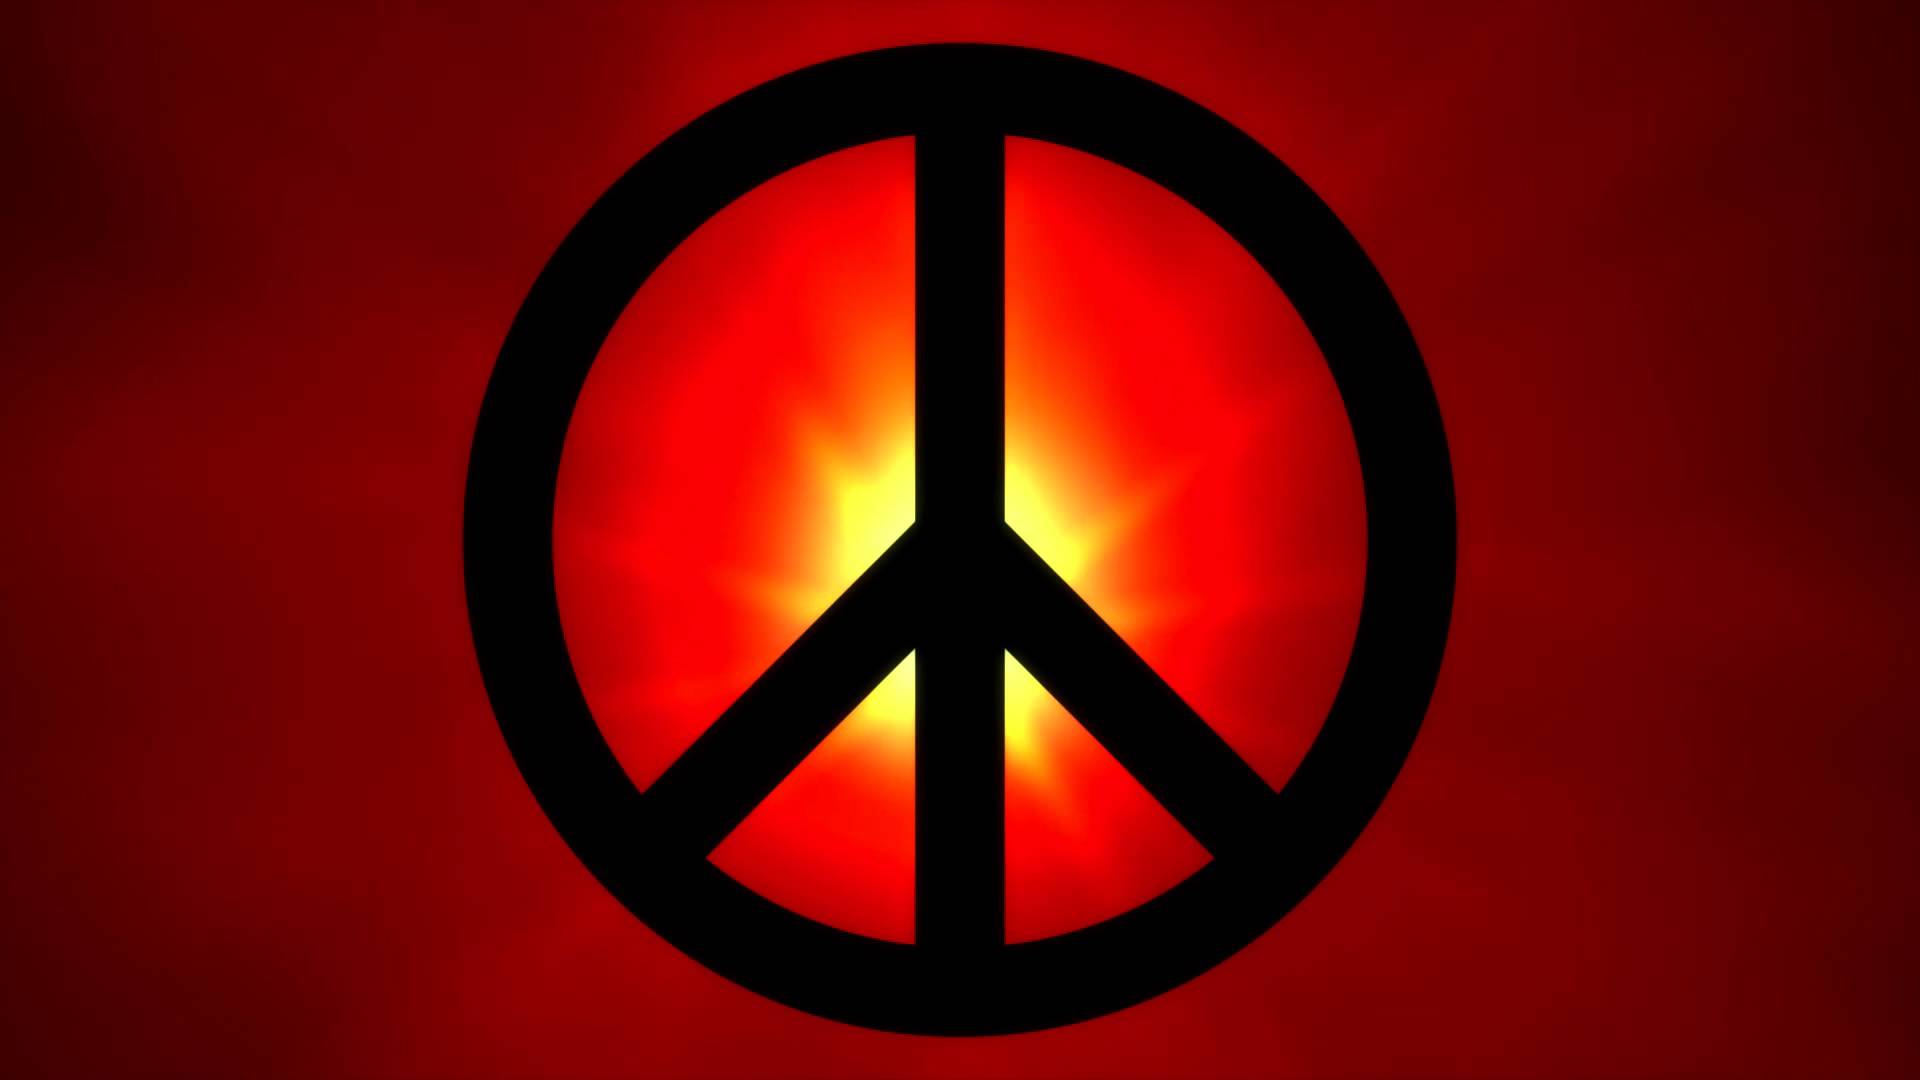 peace wallpaper hd,rosso,arancia,simbolo,simboli di pace,cerchio